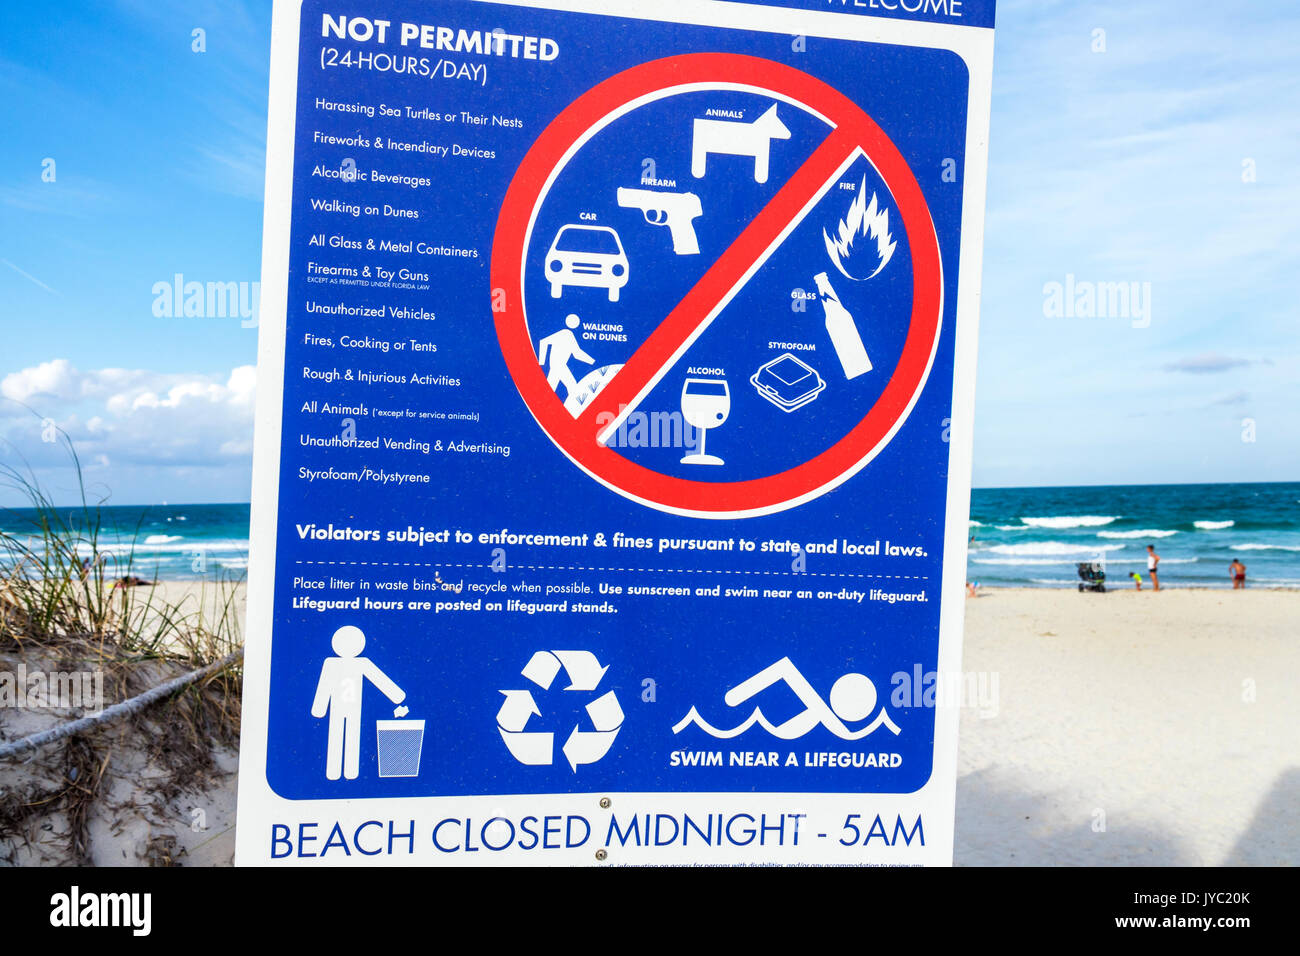 Miami Beach Florida, segnale normativo, avvertenza, non consentito, bevande bevande bevande bevande bevande bevande, alcol, animali, armi da fuoco, regole, viaggi visitatori Foto Stock